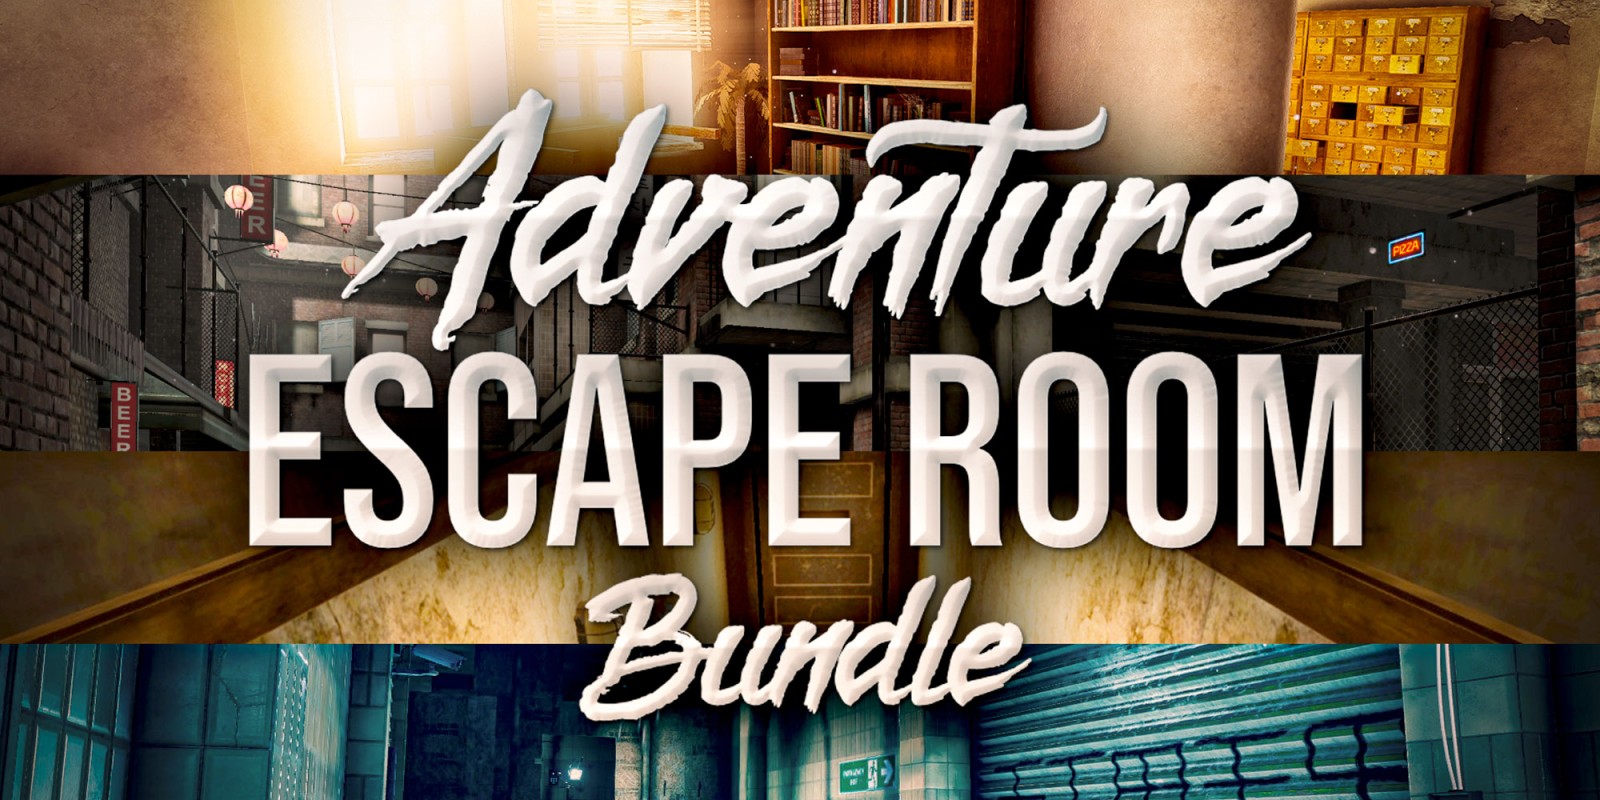 Adventure Escape Room Bundle